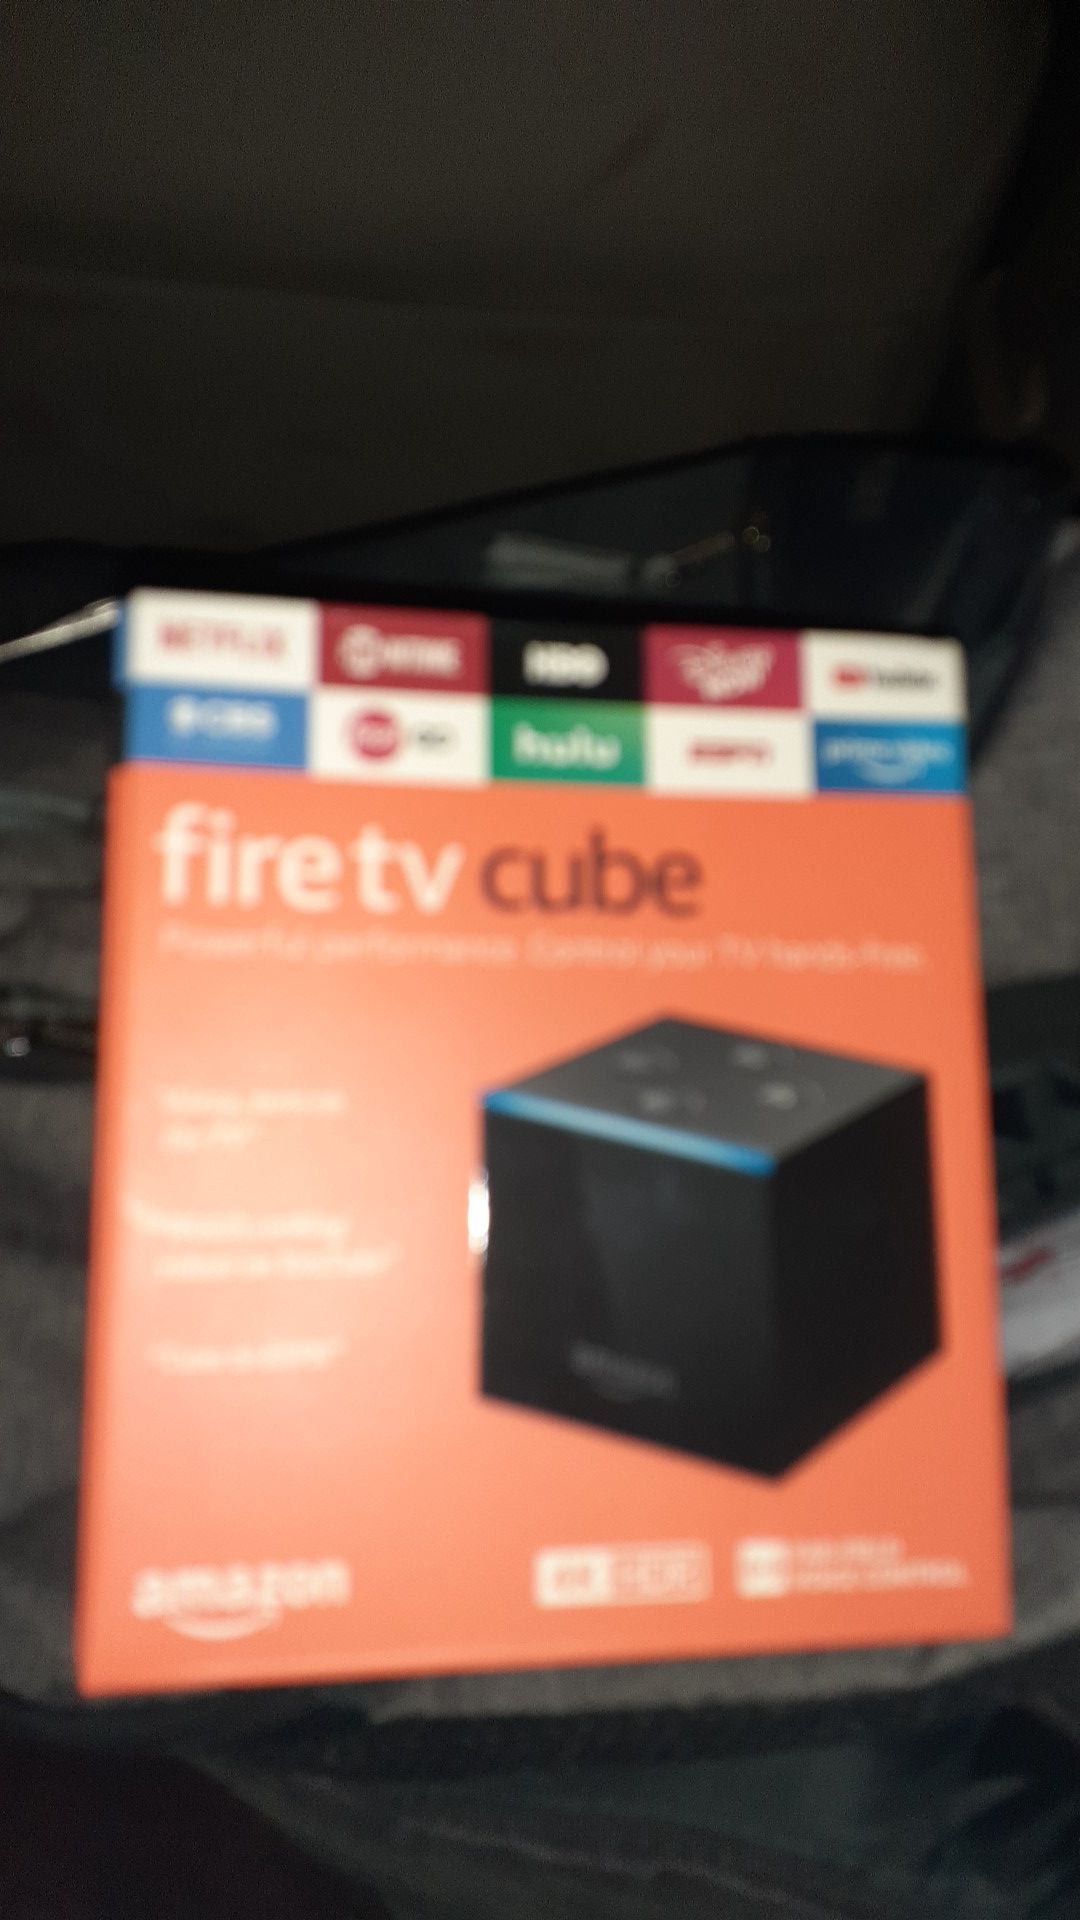 Fire TV Cube Jailbroken